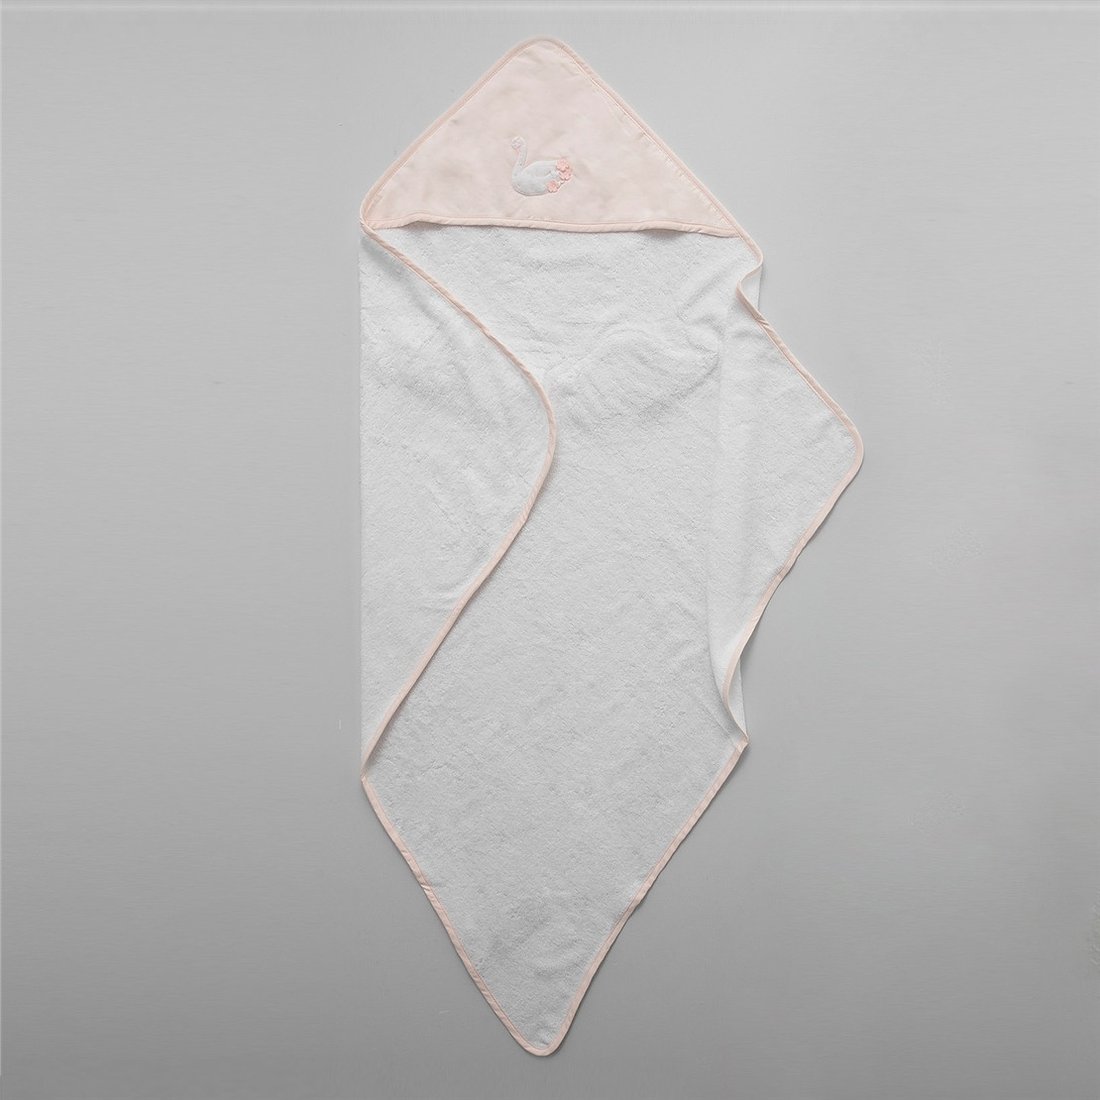 Полотенце - уголок для новорожденных Swan 129*97 белое с розовым